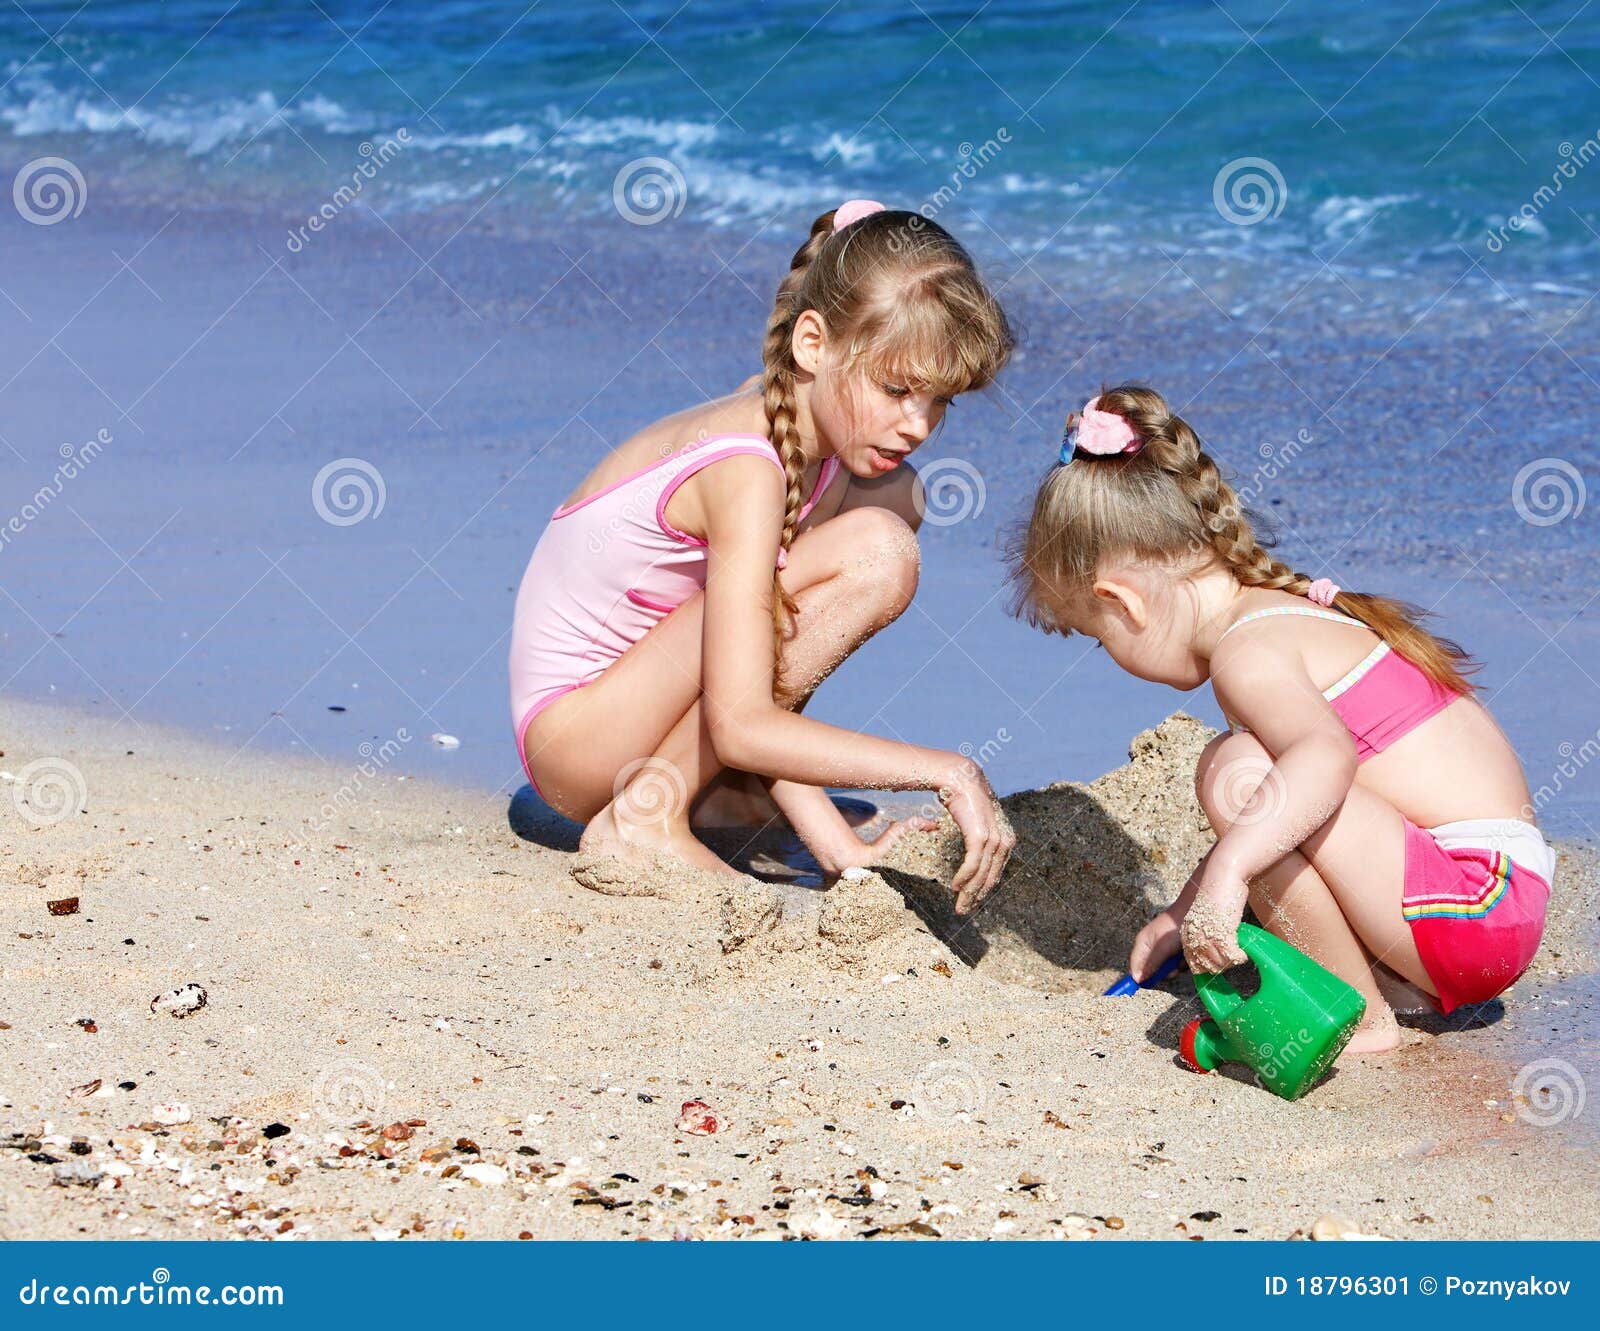 дети на голом пляже фото 107